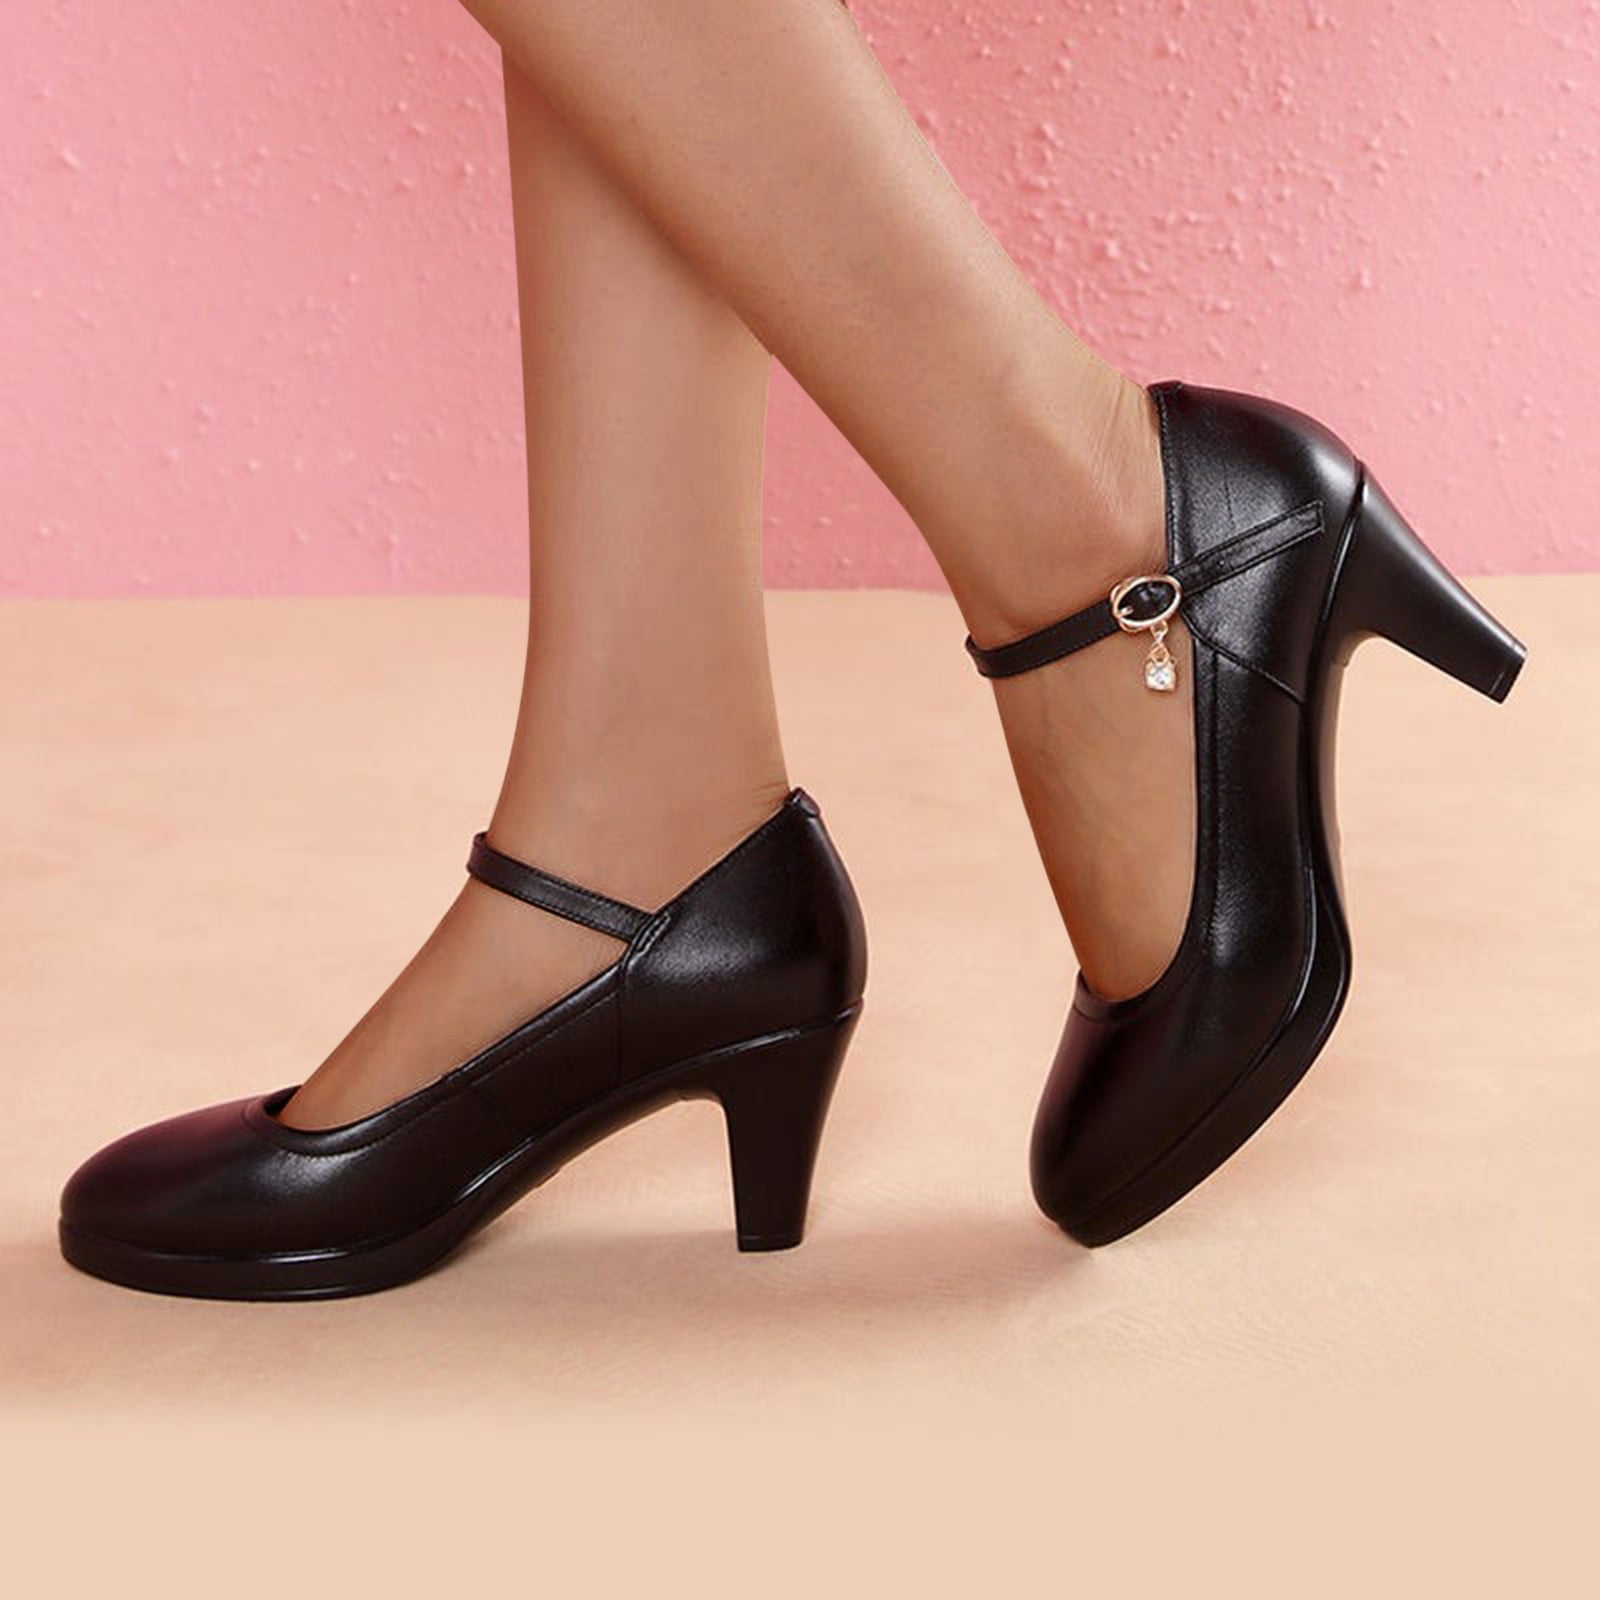 Women's Black Heels